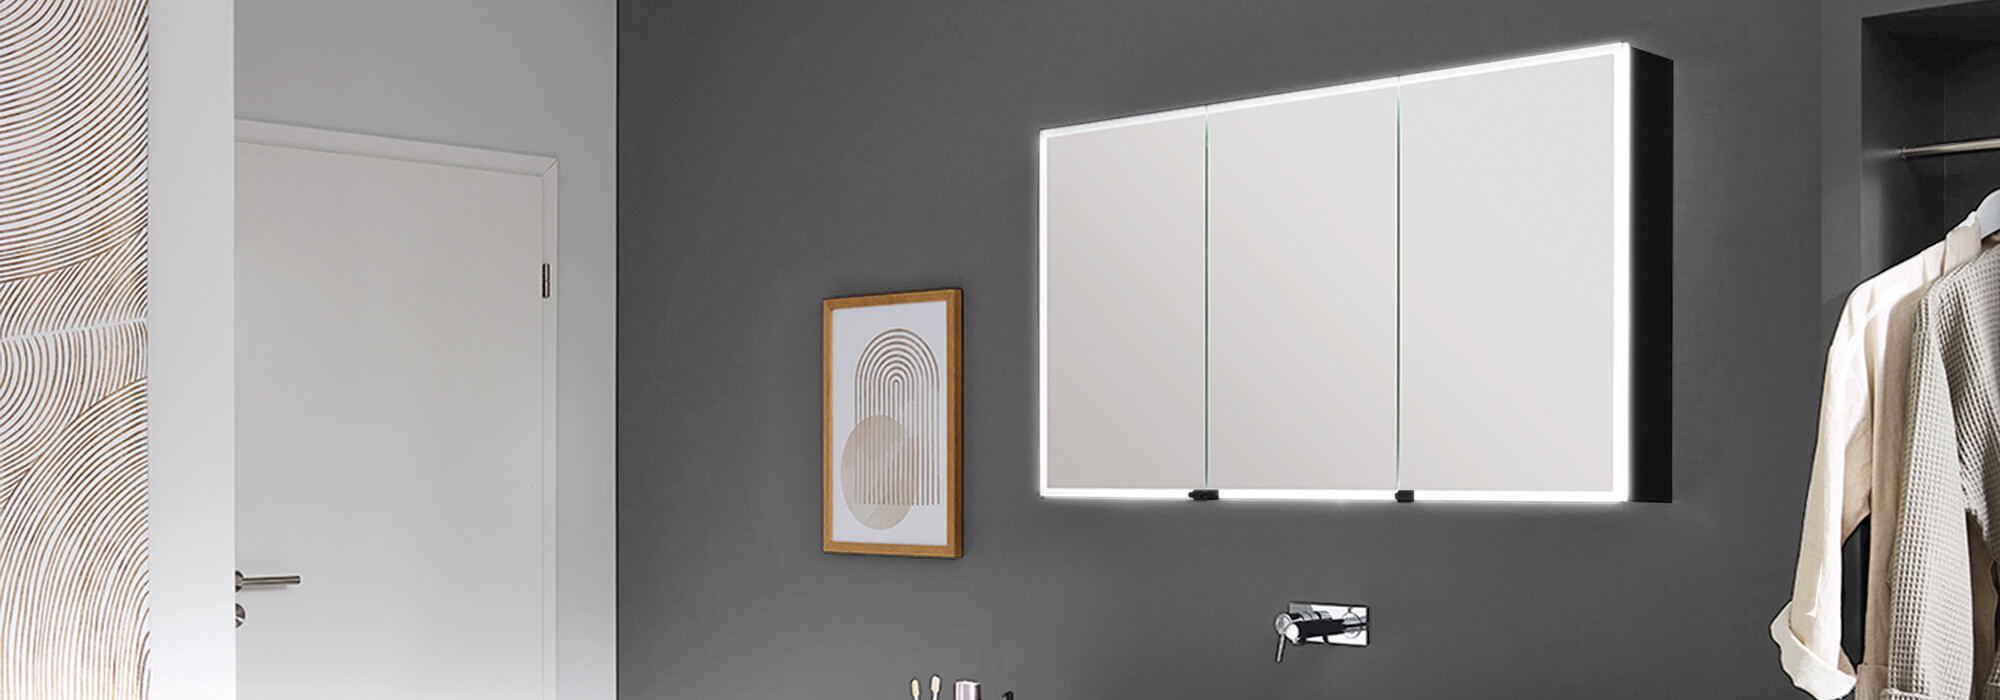 Spiegelschrank Pure-Line mit umlaufender Beleuchtung und sandgestrahlter Spiegelfläche